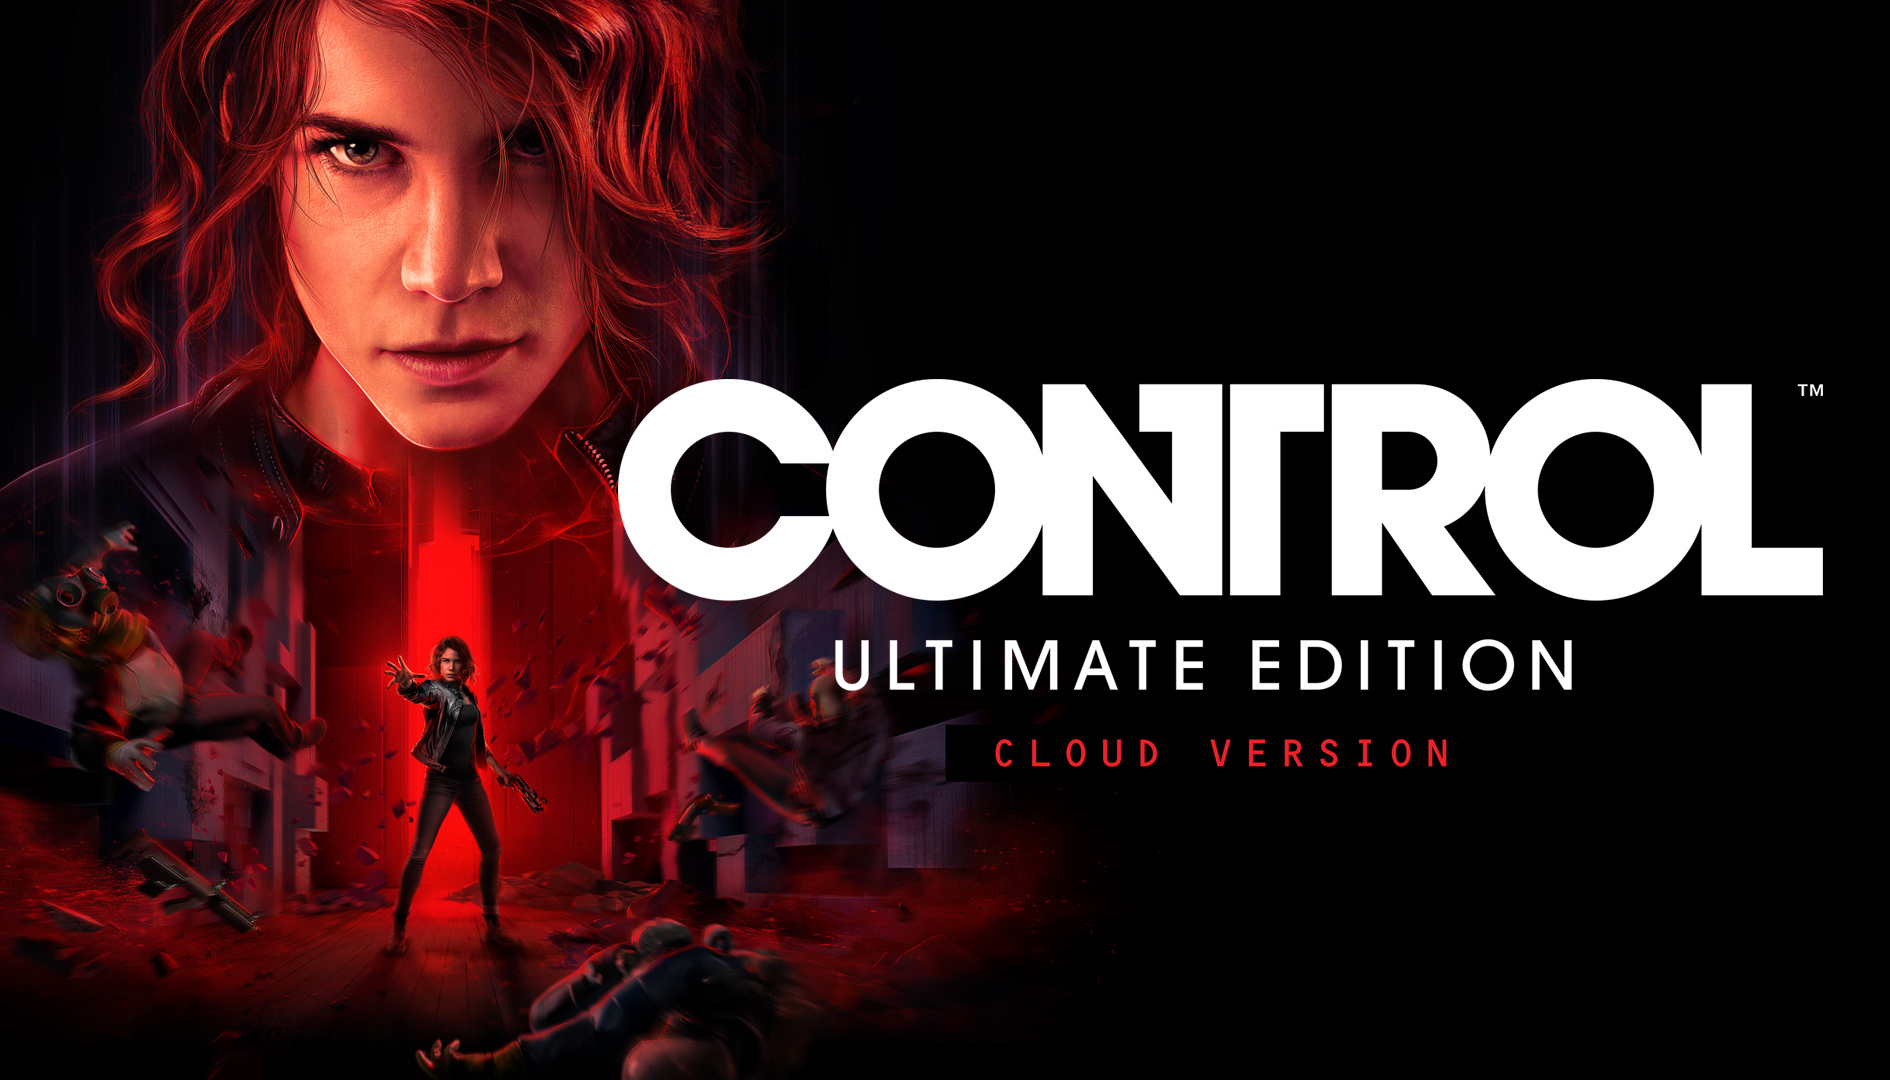 Control Ultimate Edition: meglio PS5 o Xbox Series X dai test?